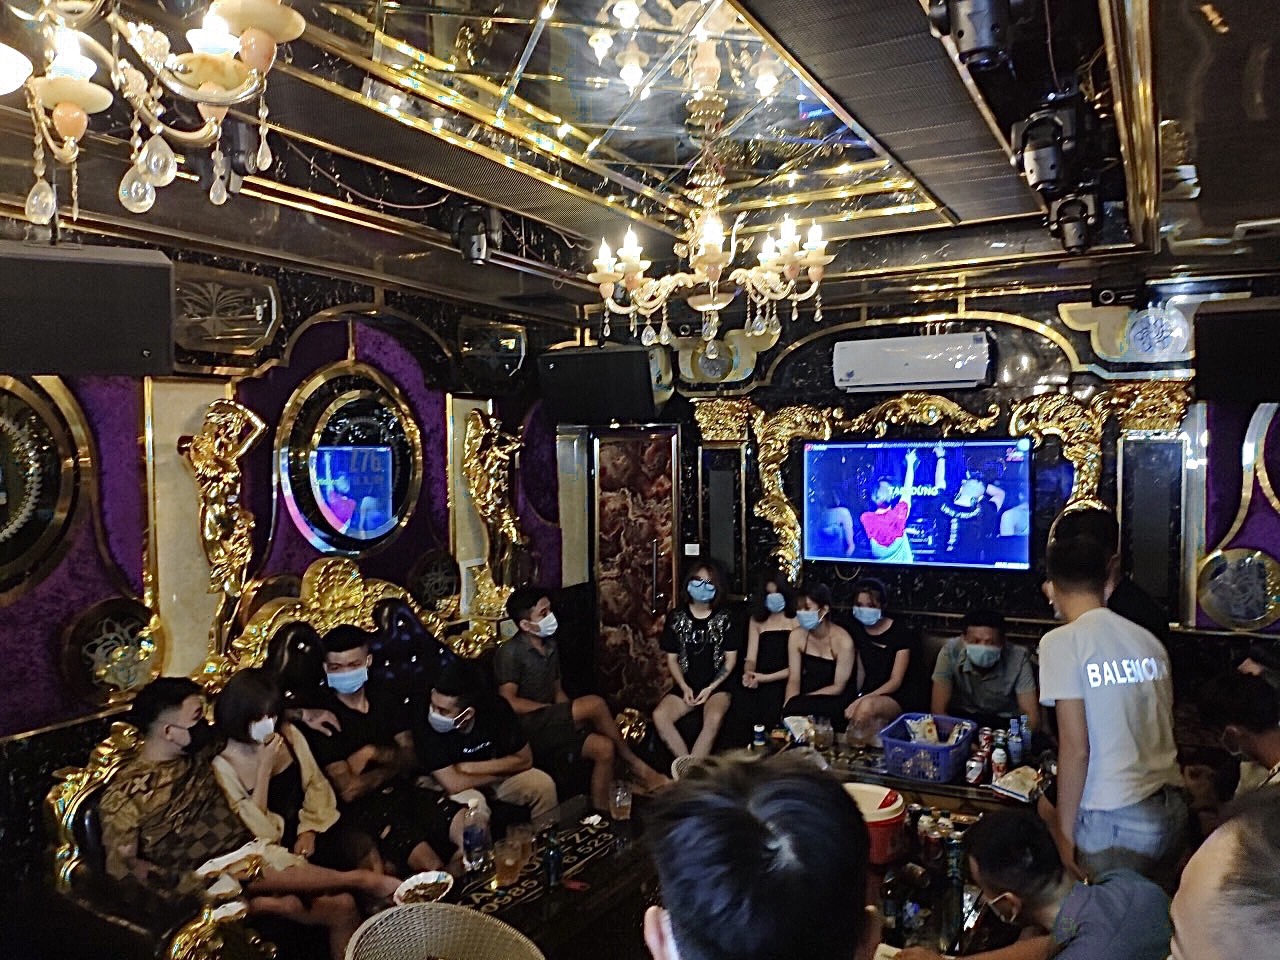 13 nam và 7 nữ tụ tập hát karaoke phản cảm giữa dịch Covid-19  - Ảnh 1.